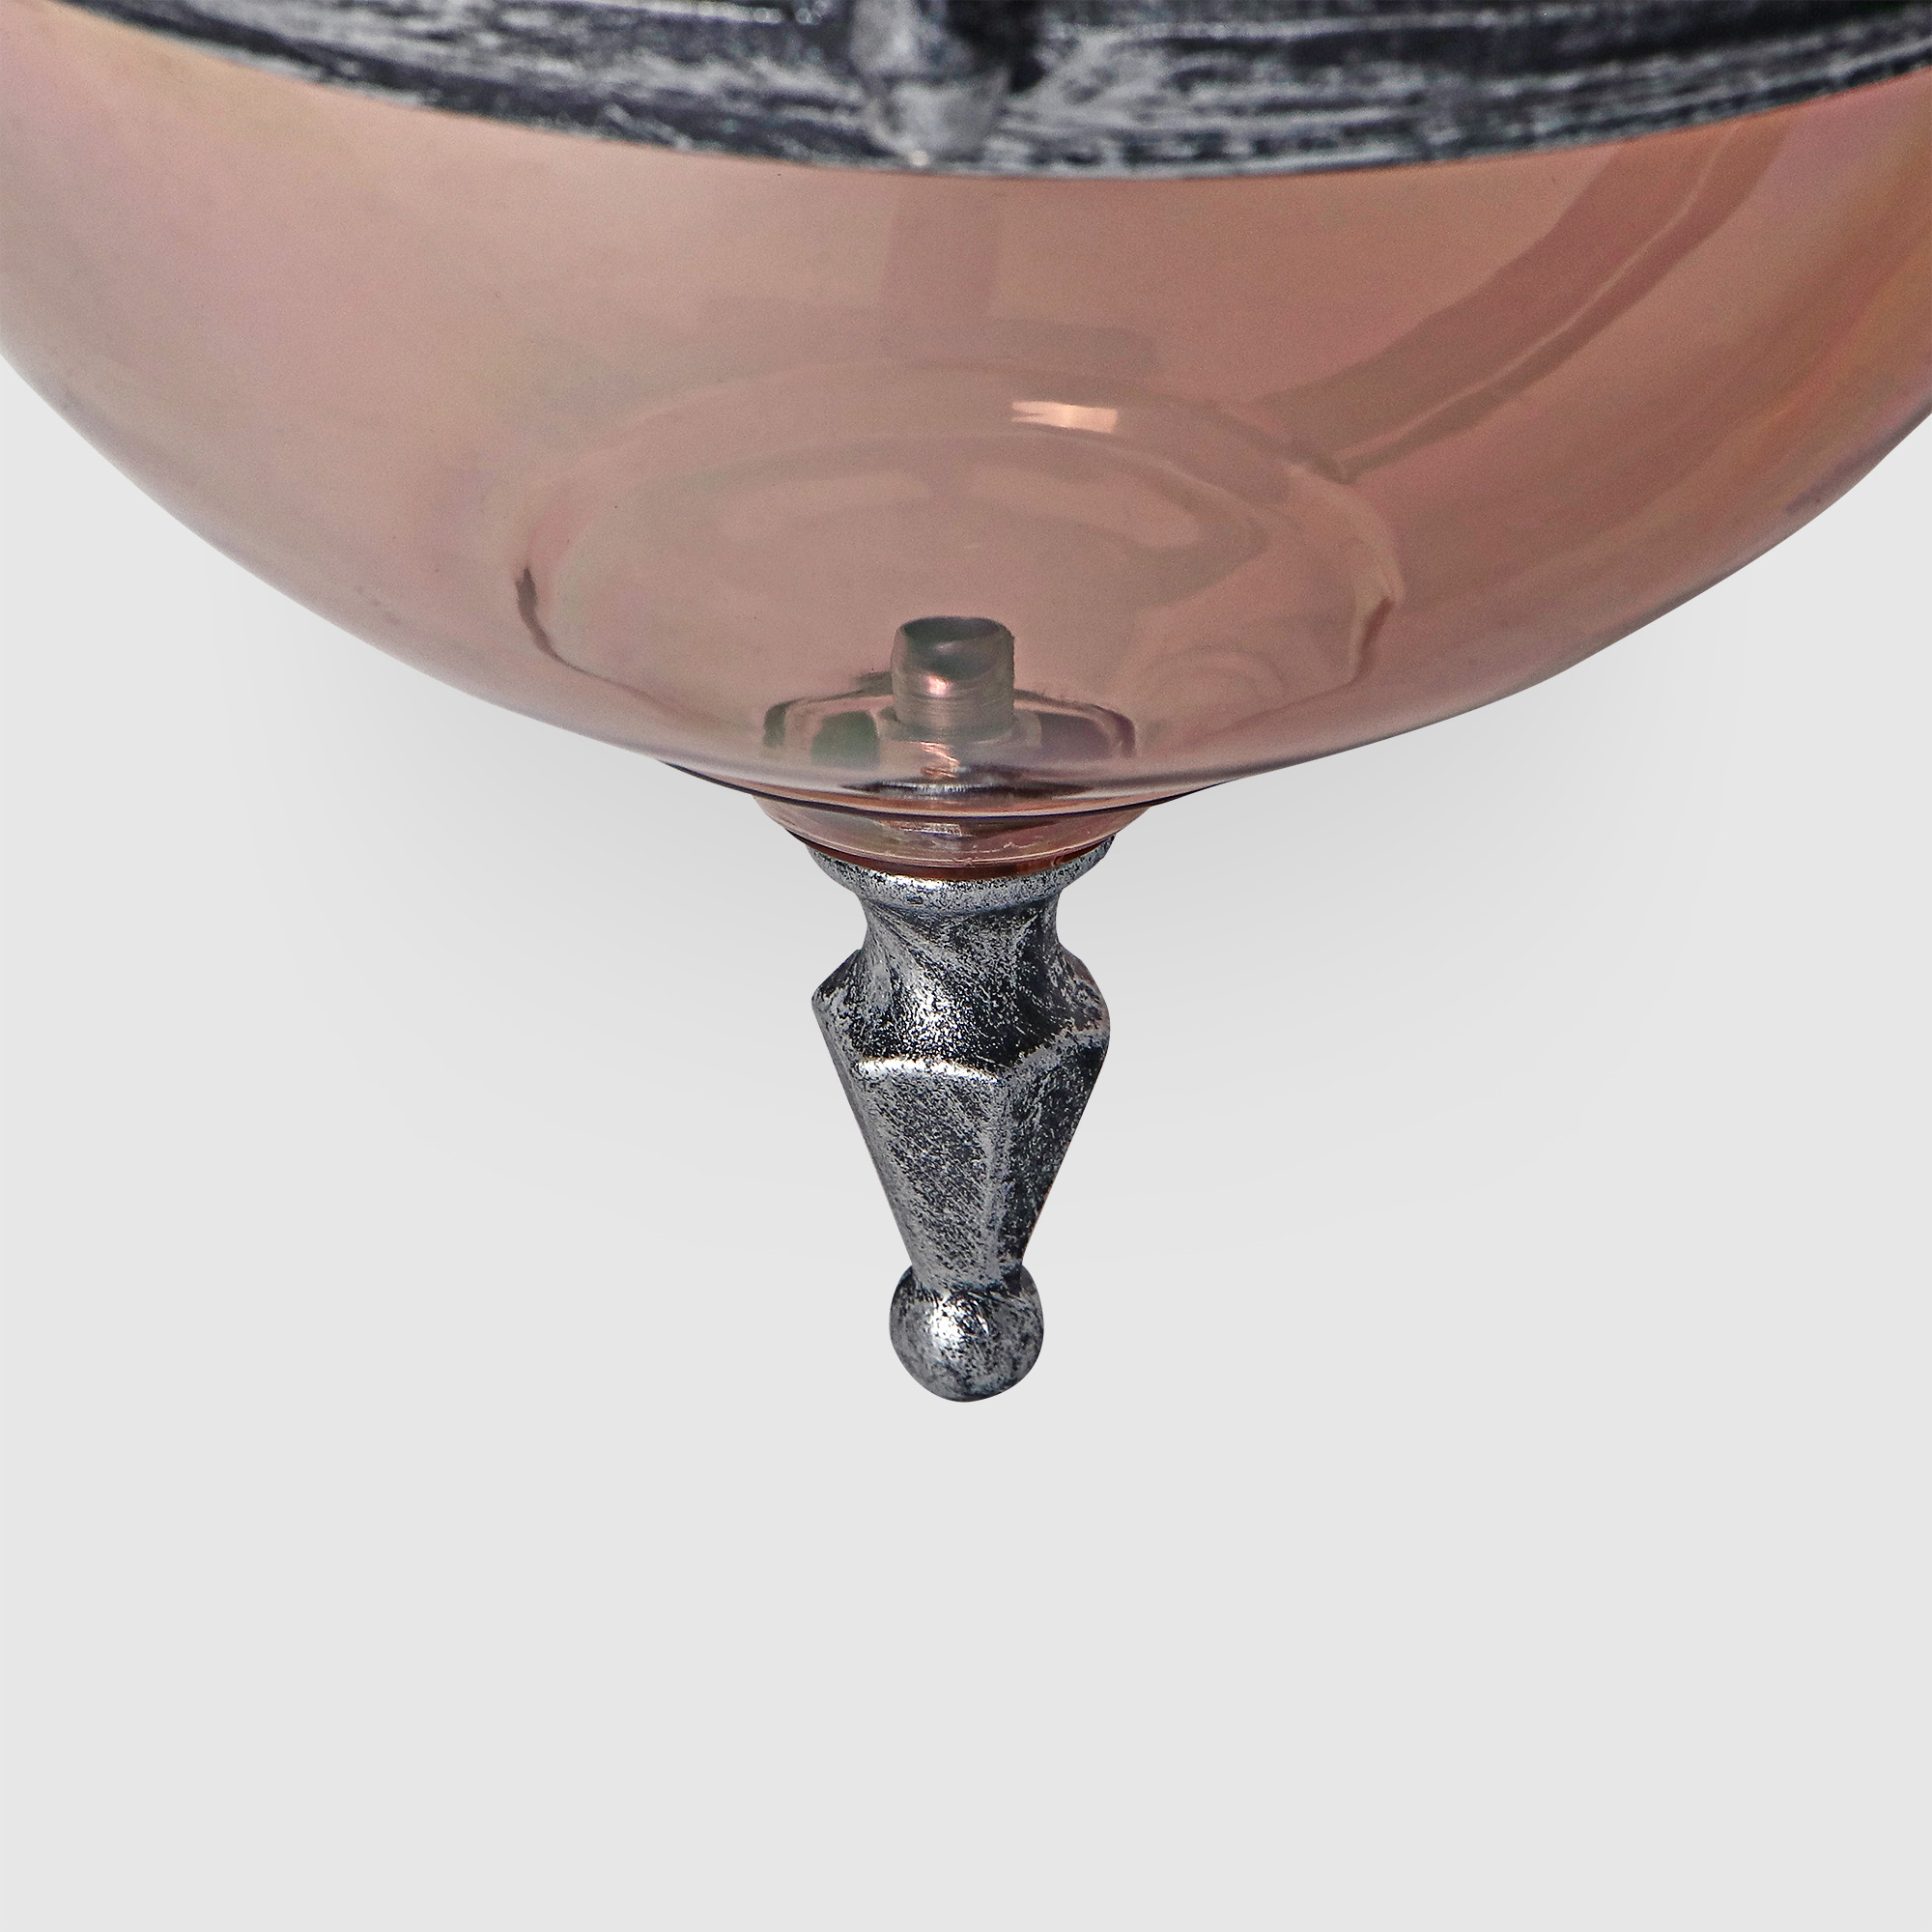 Светильник настенный Amber Lamp 8261B садовый, черное серебро, цвет шампань - фото 4